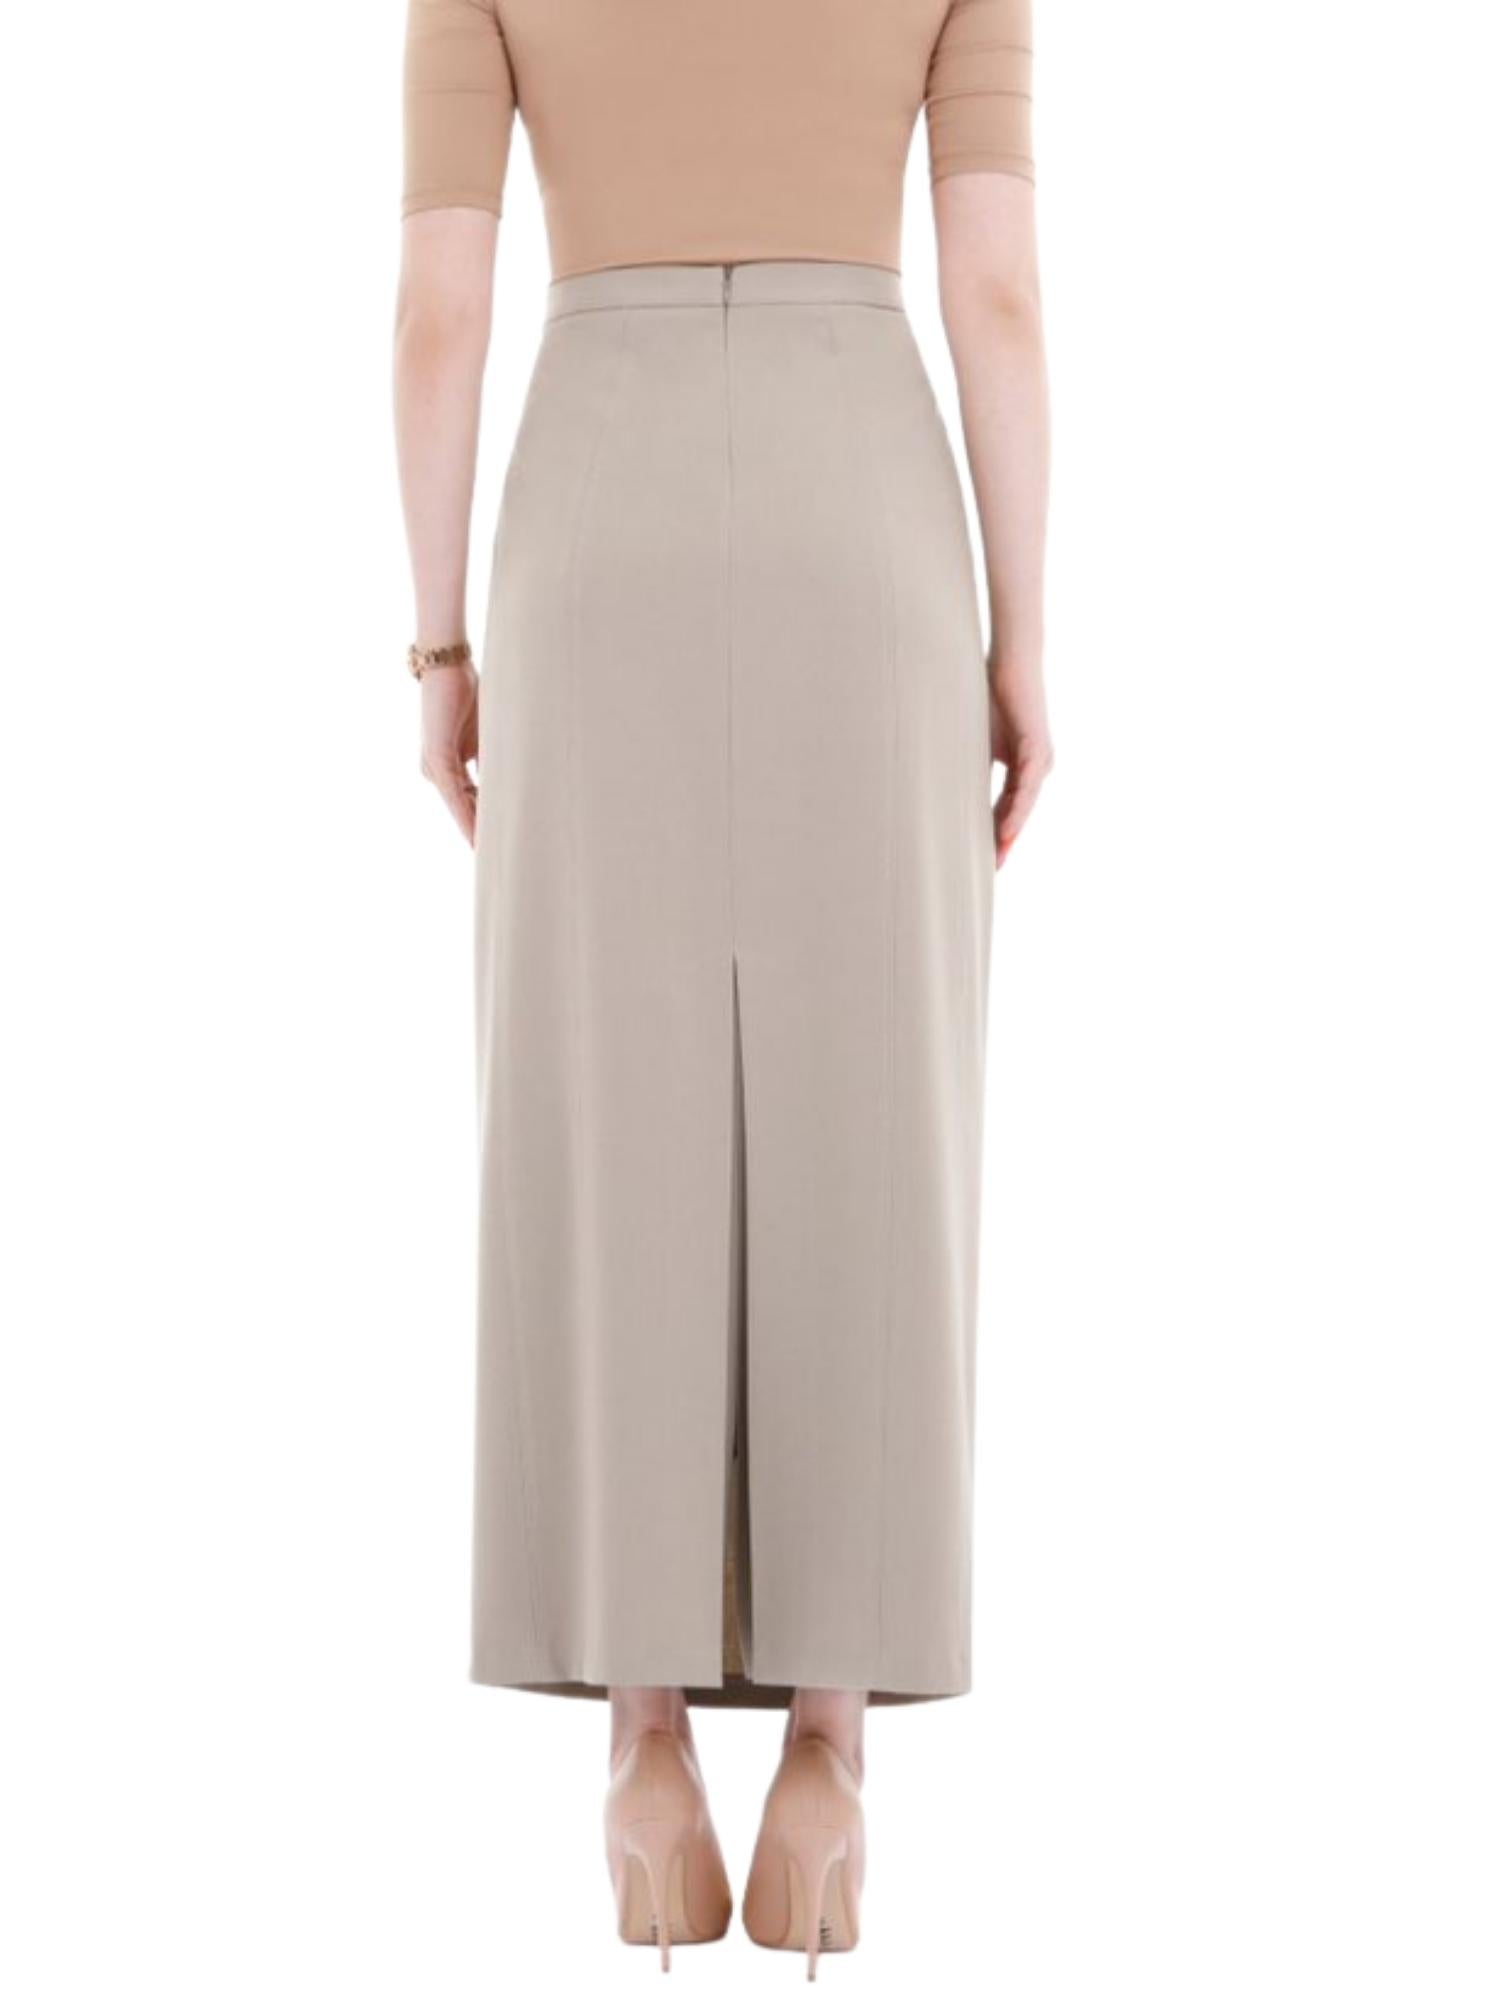 Beige Ankle Length Women's Plus Size Back Split Maxi Skirt G-Line